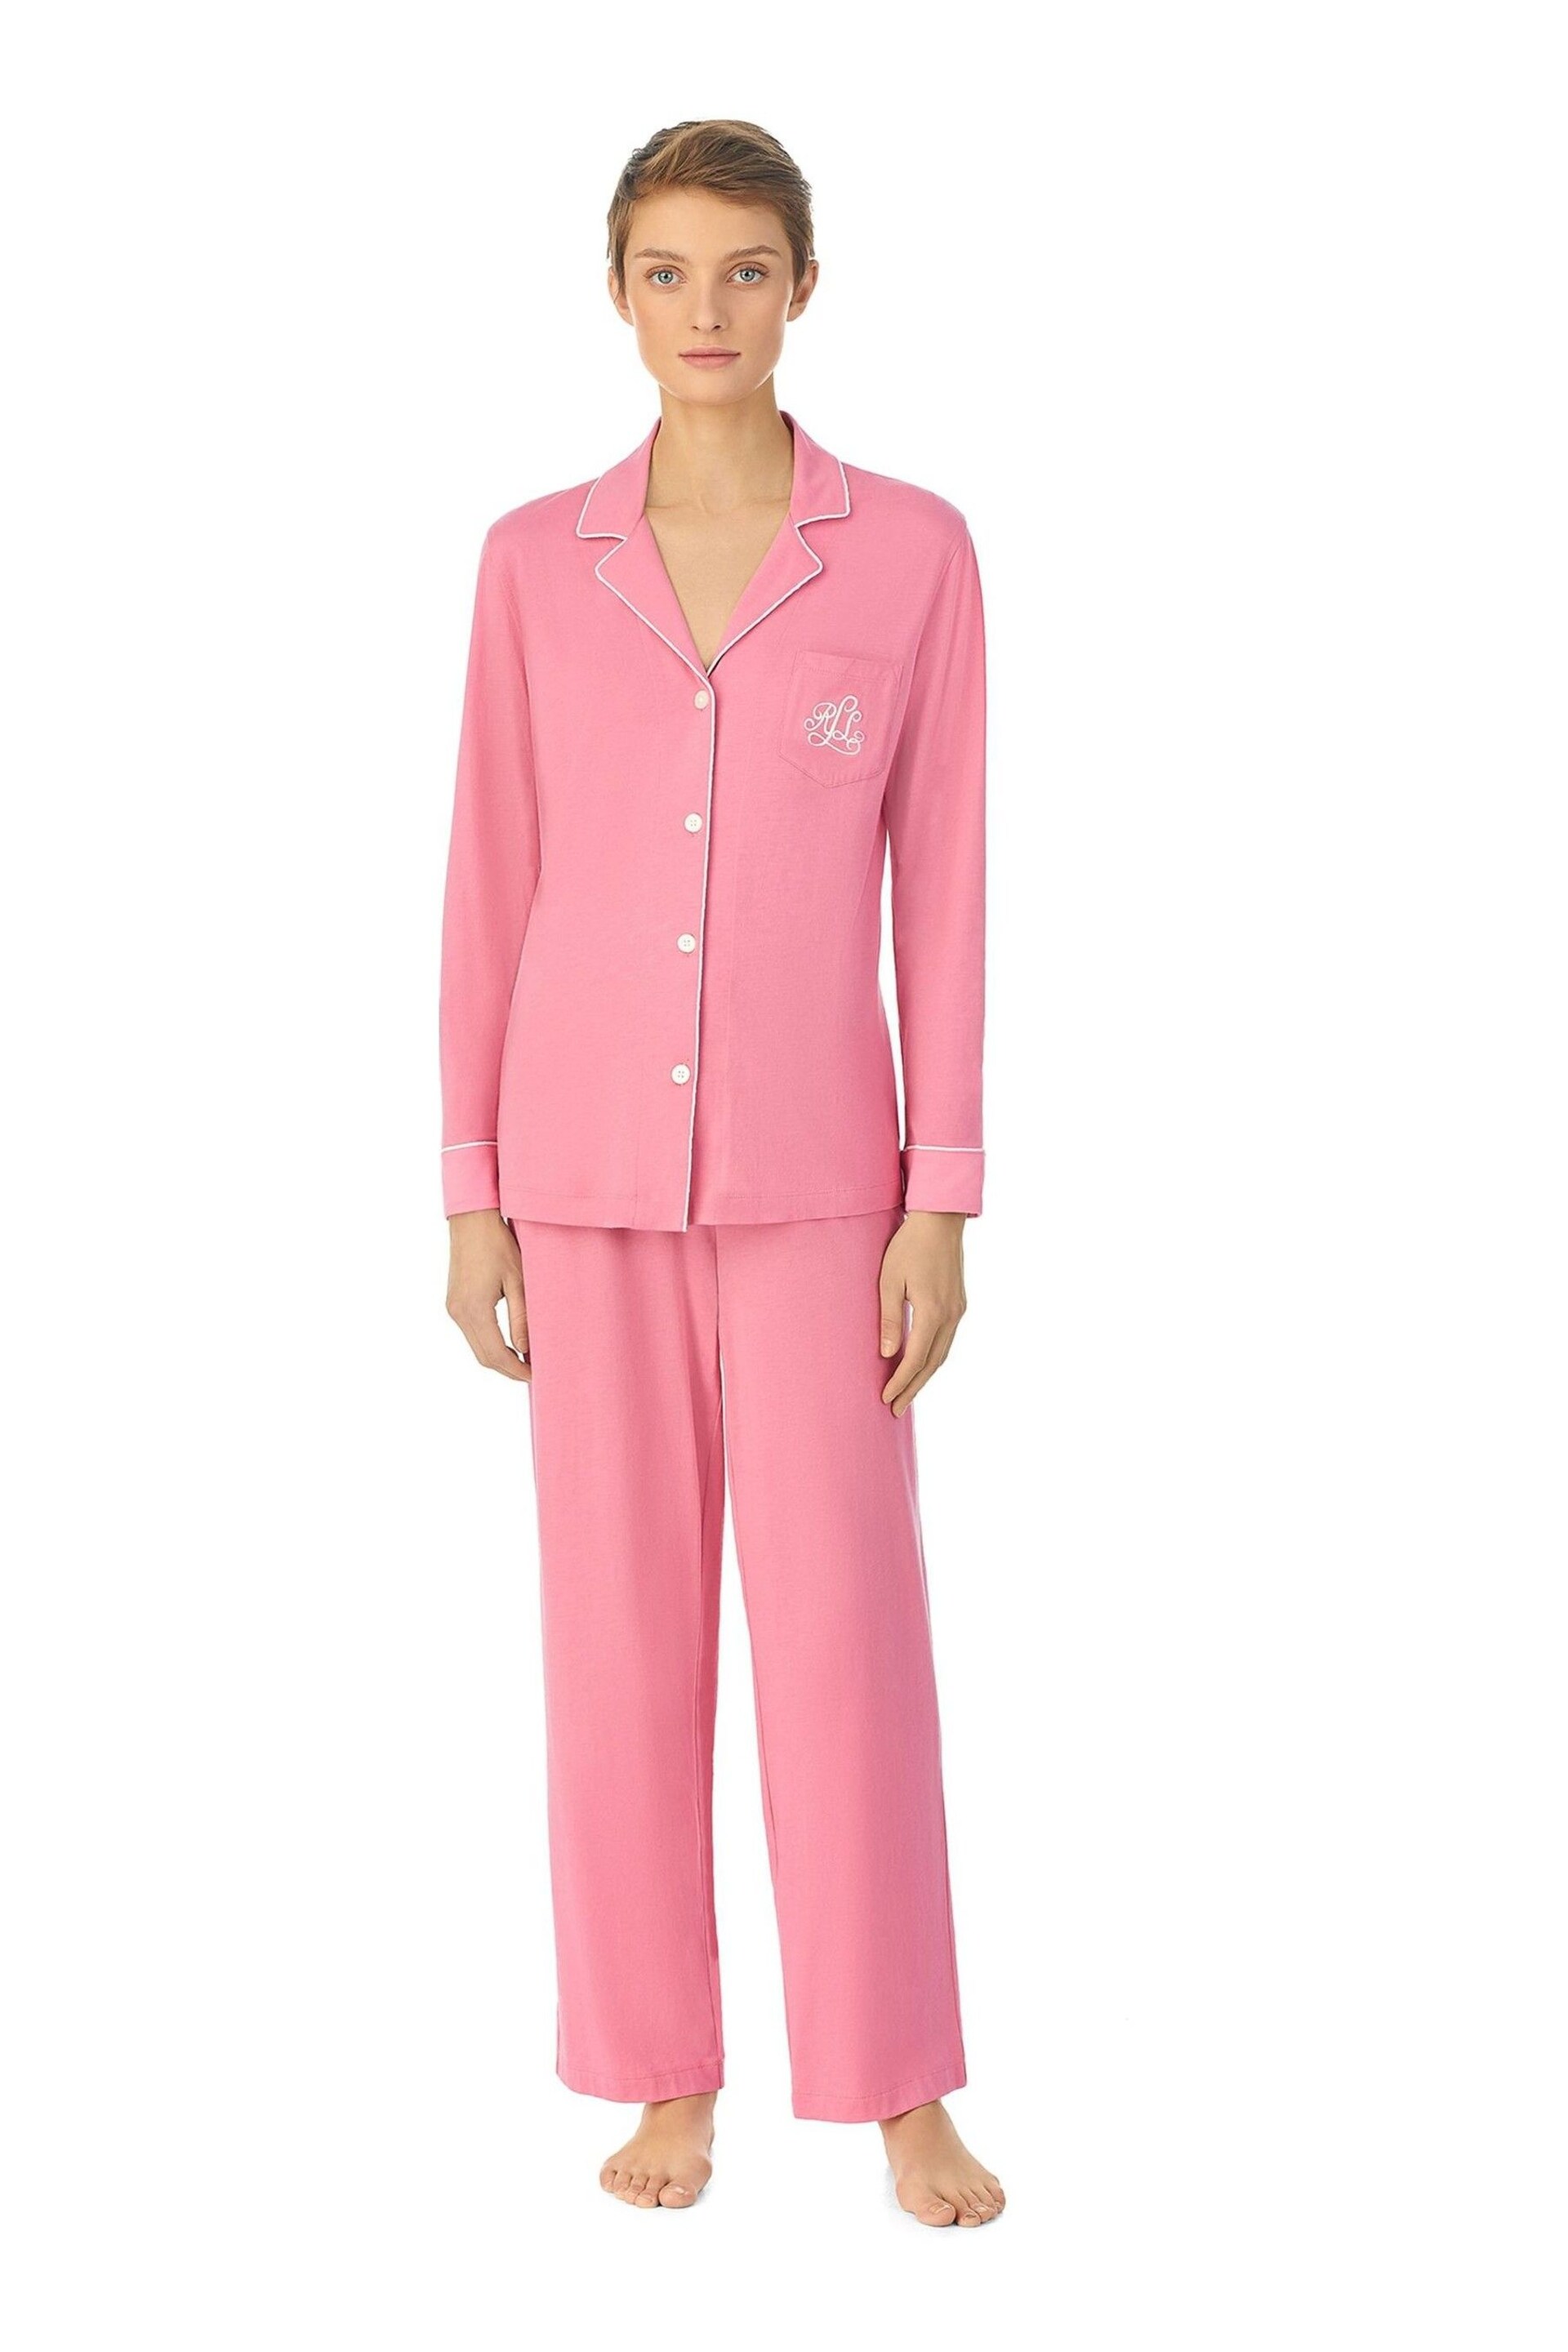 Lauren Ralph Lauren Pink Cotton Long Sleeve Pyjama Set - Image 1 of 3